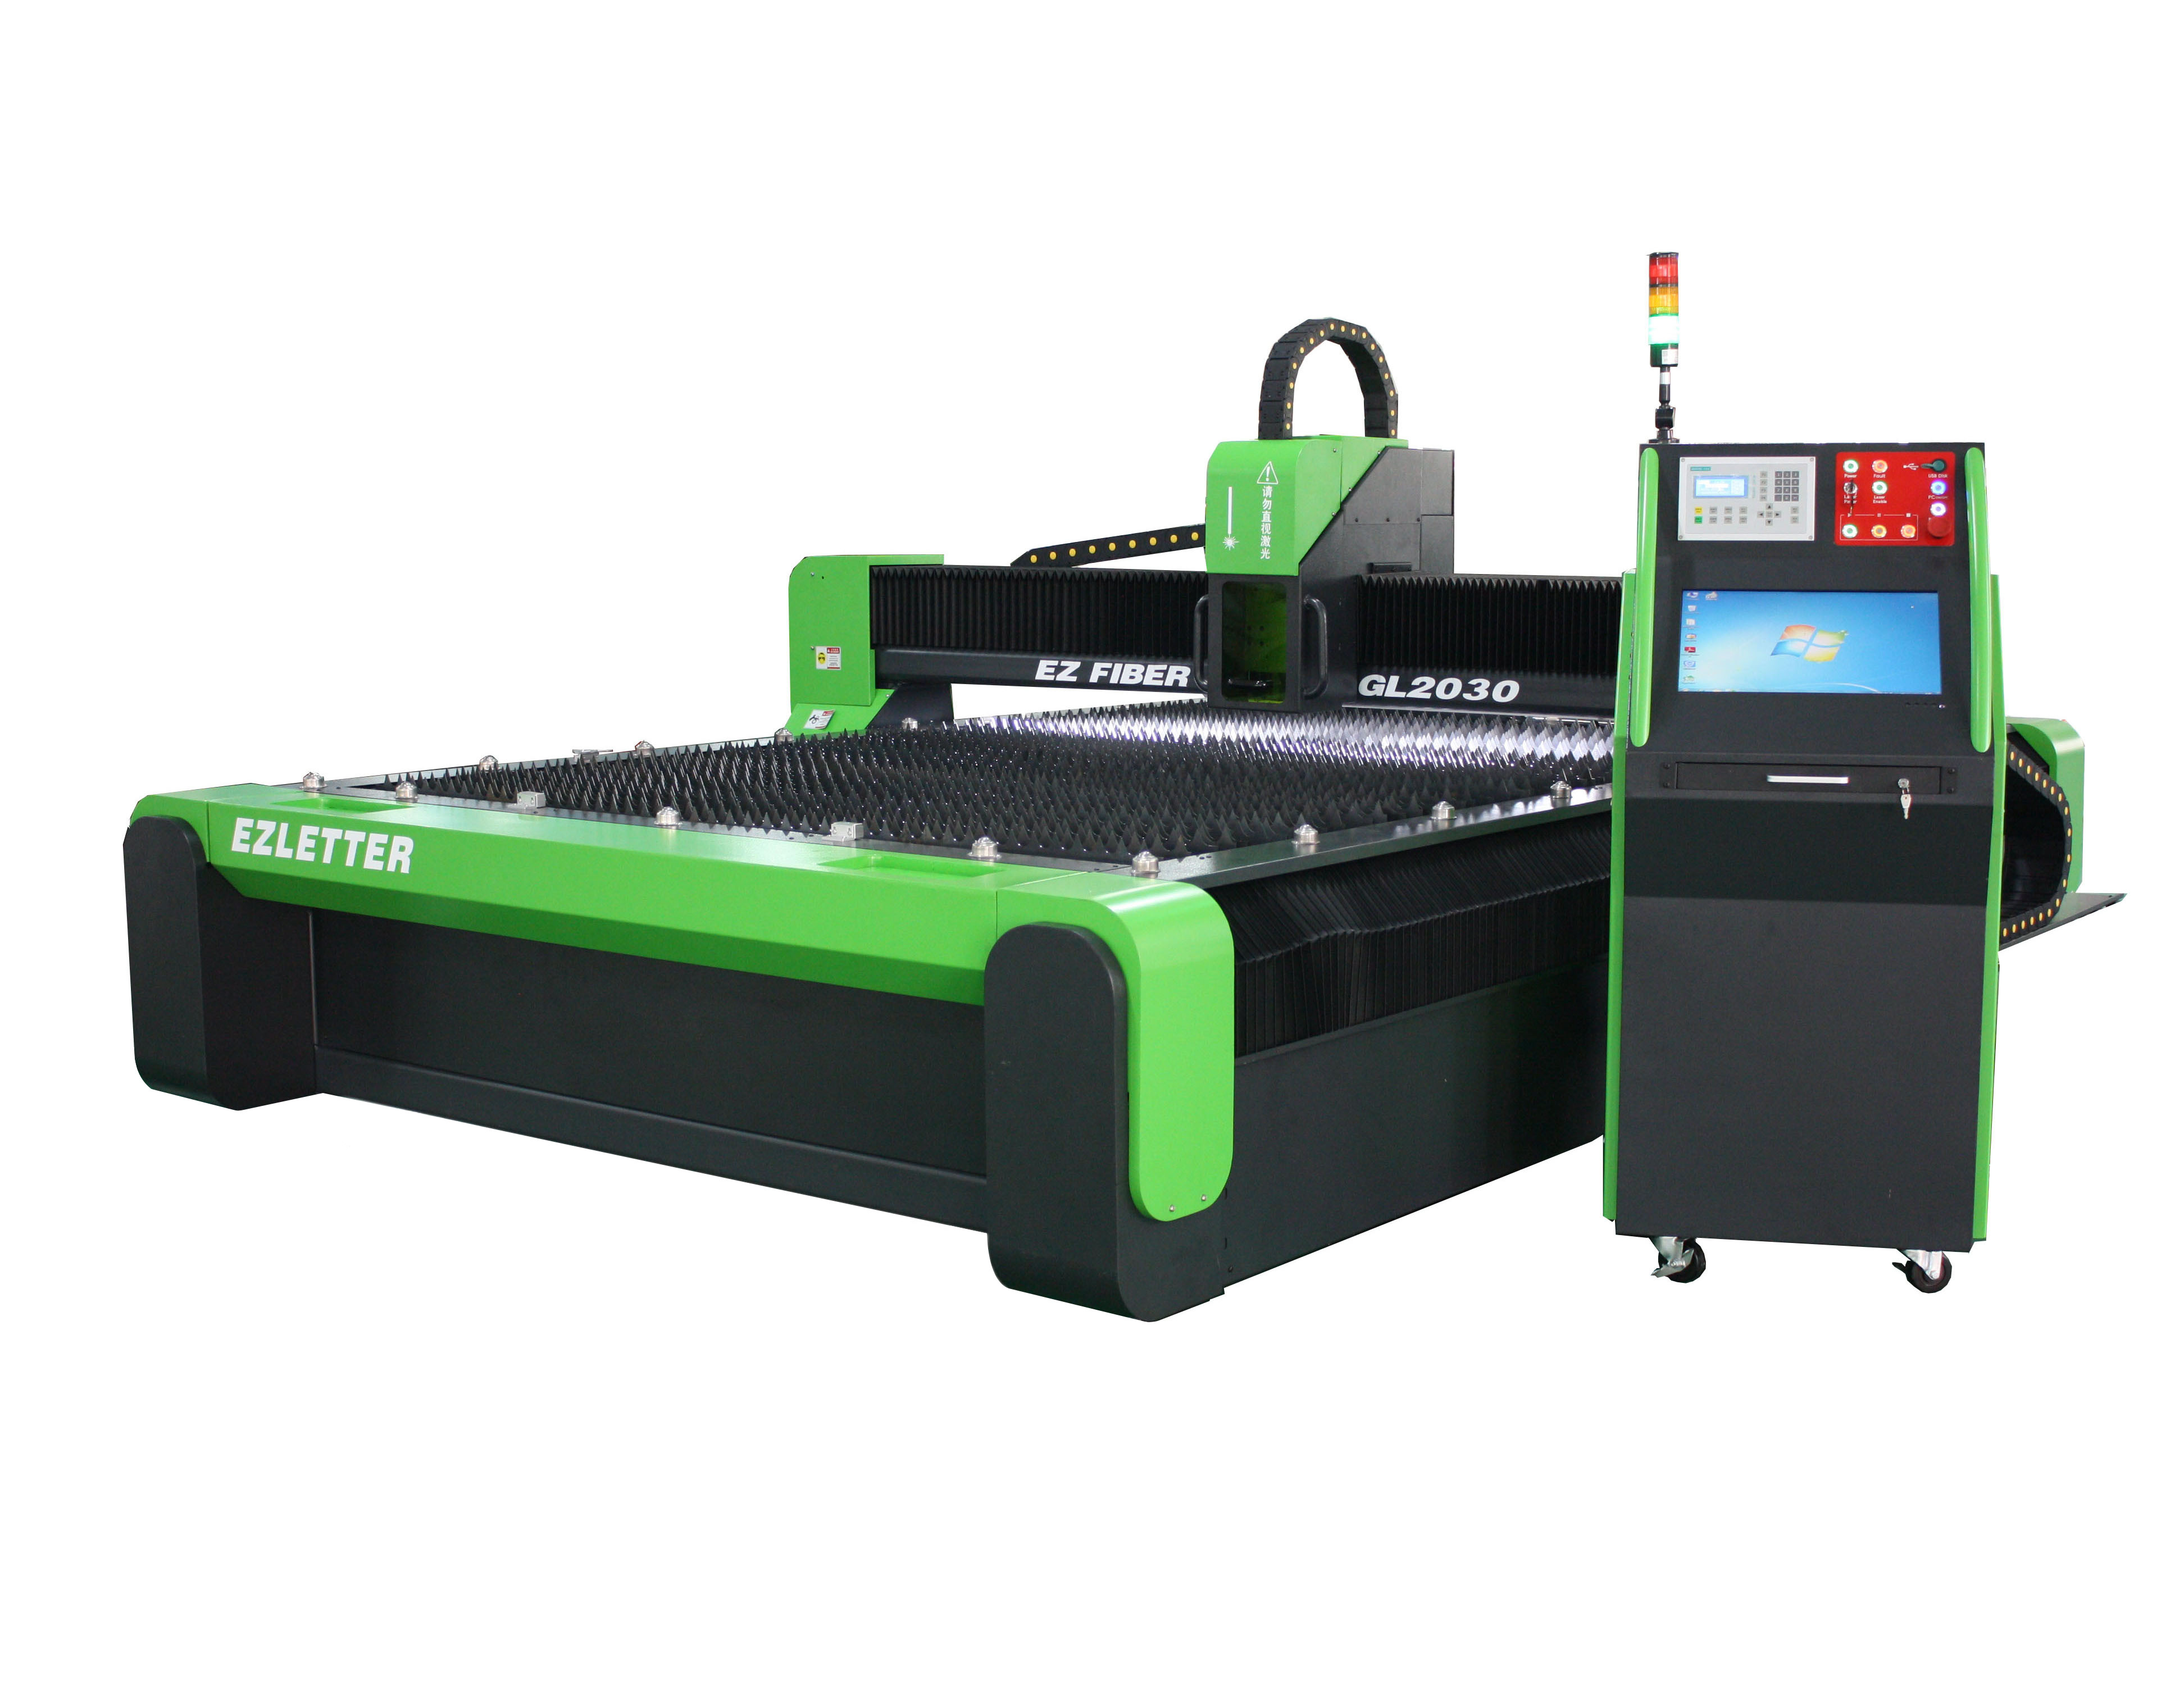  EZCNC Fiber Laser Sheet Metal Cutter GL2030 IPG Laser/WSX laser cutting head Manufactures